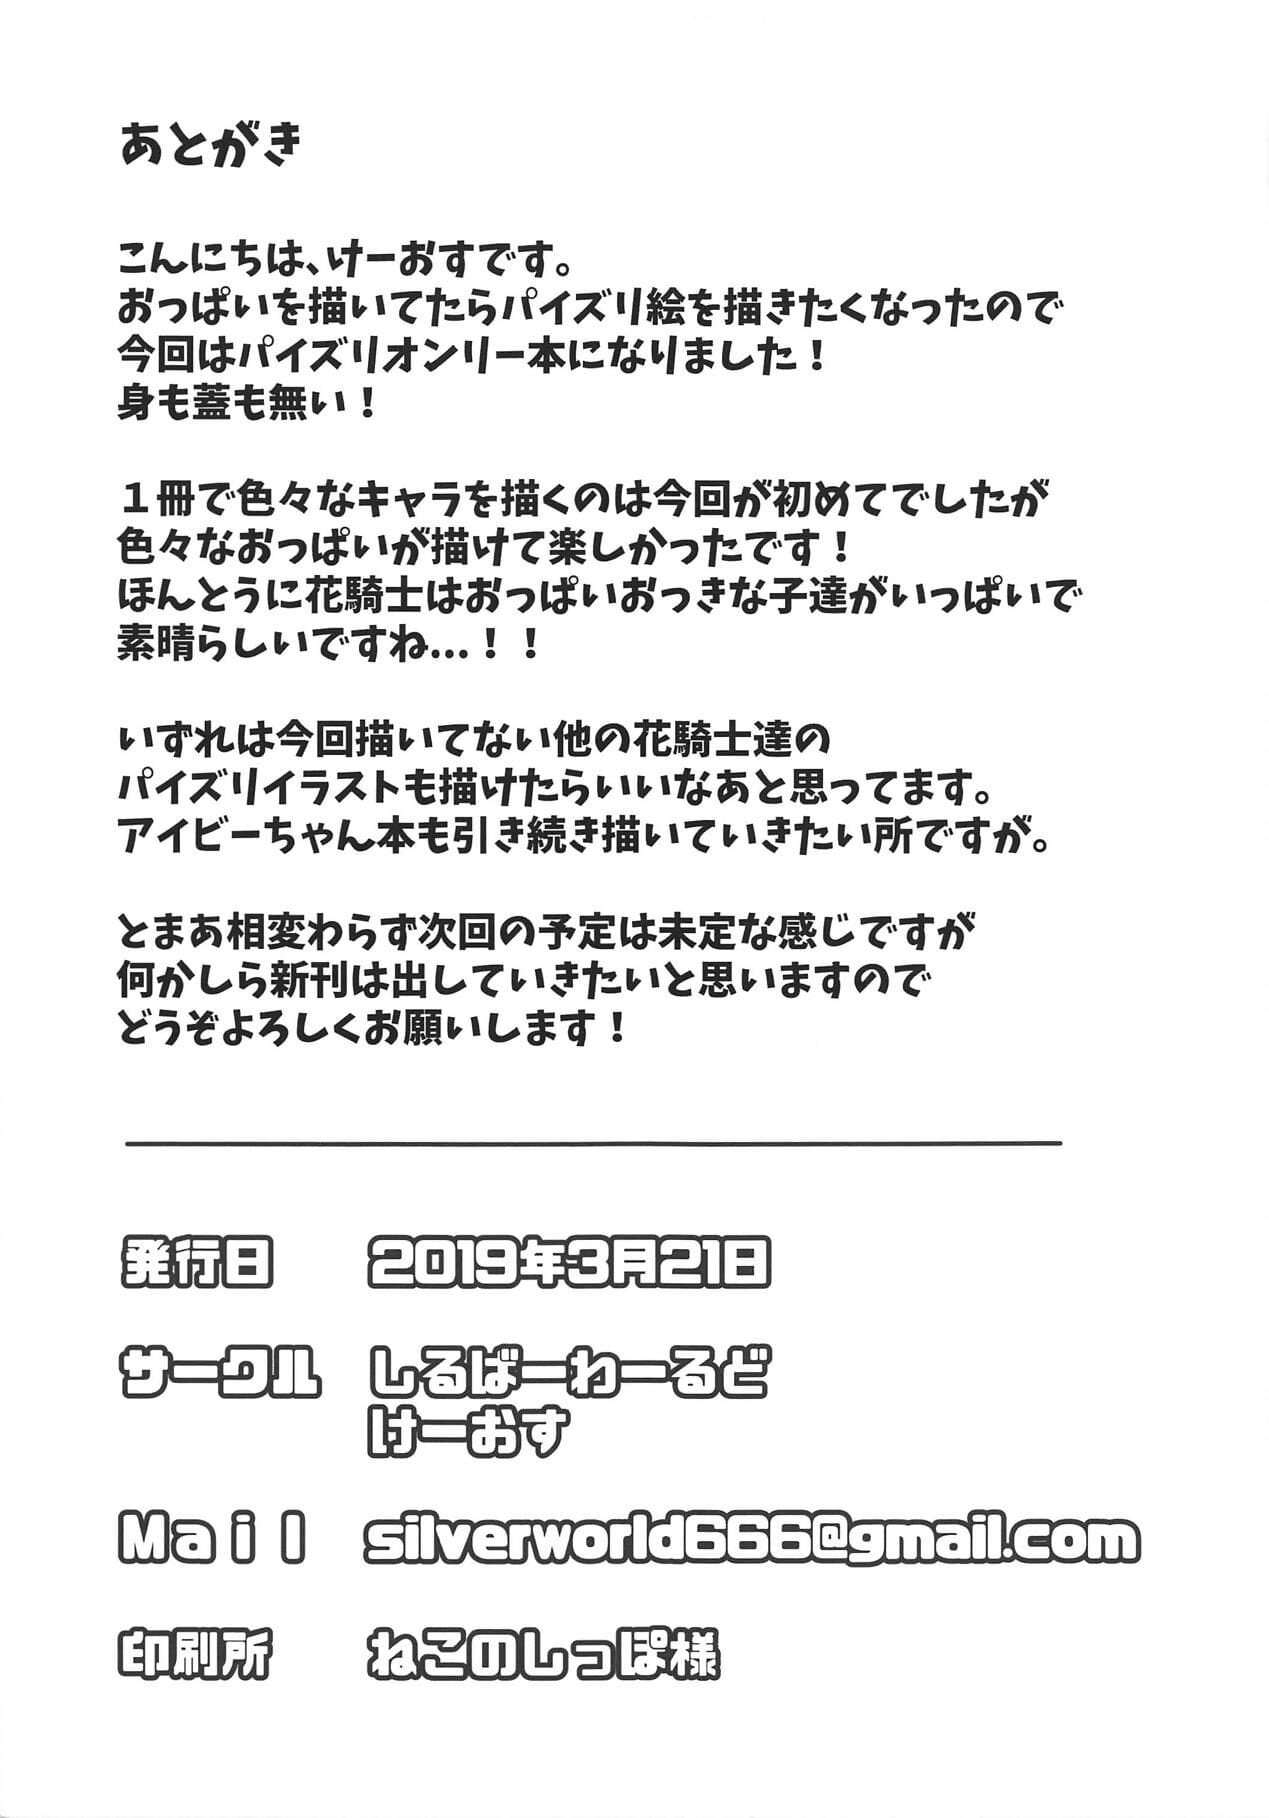 花 岸 paizuri お盆 page 1